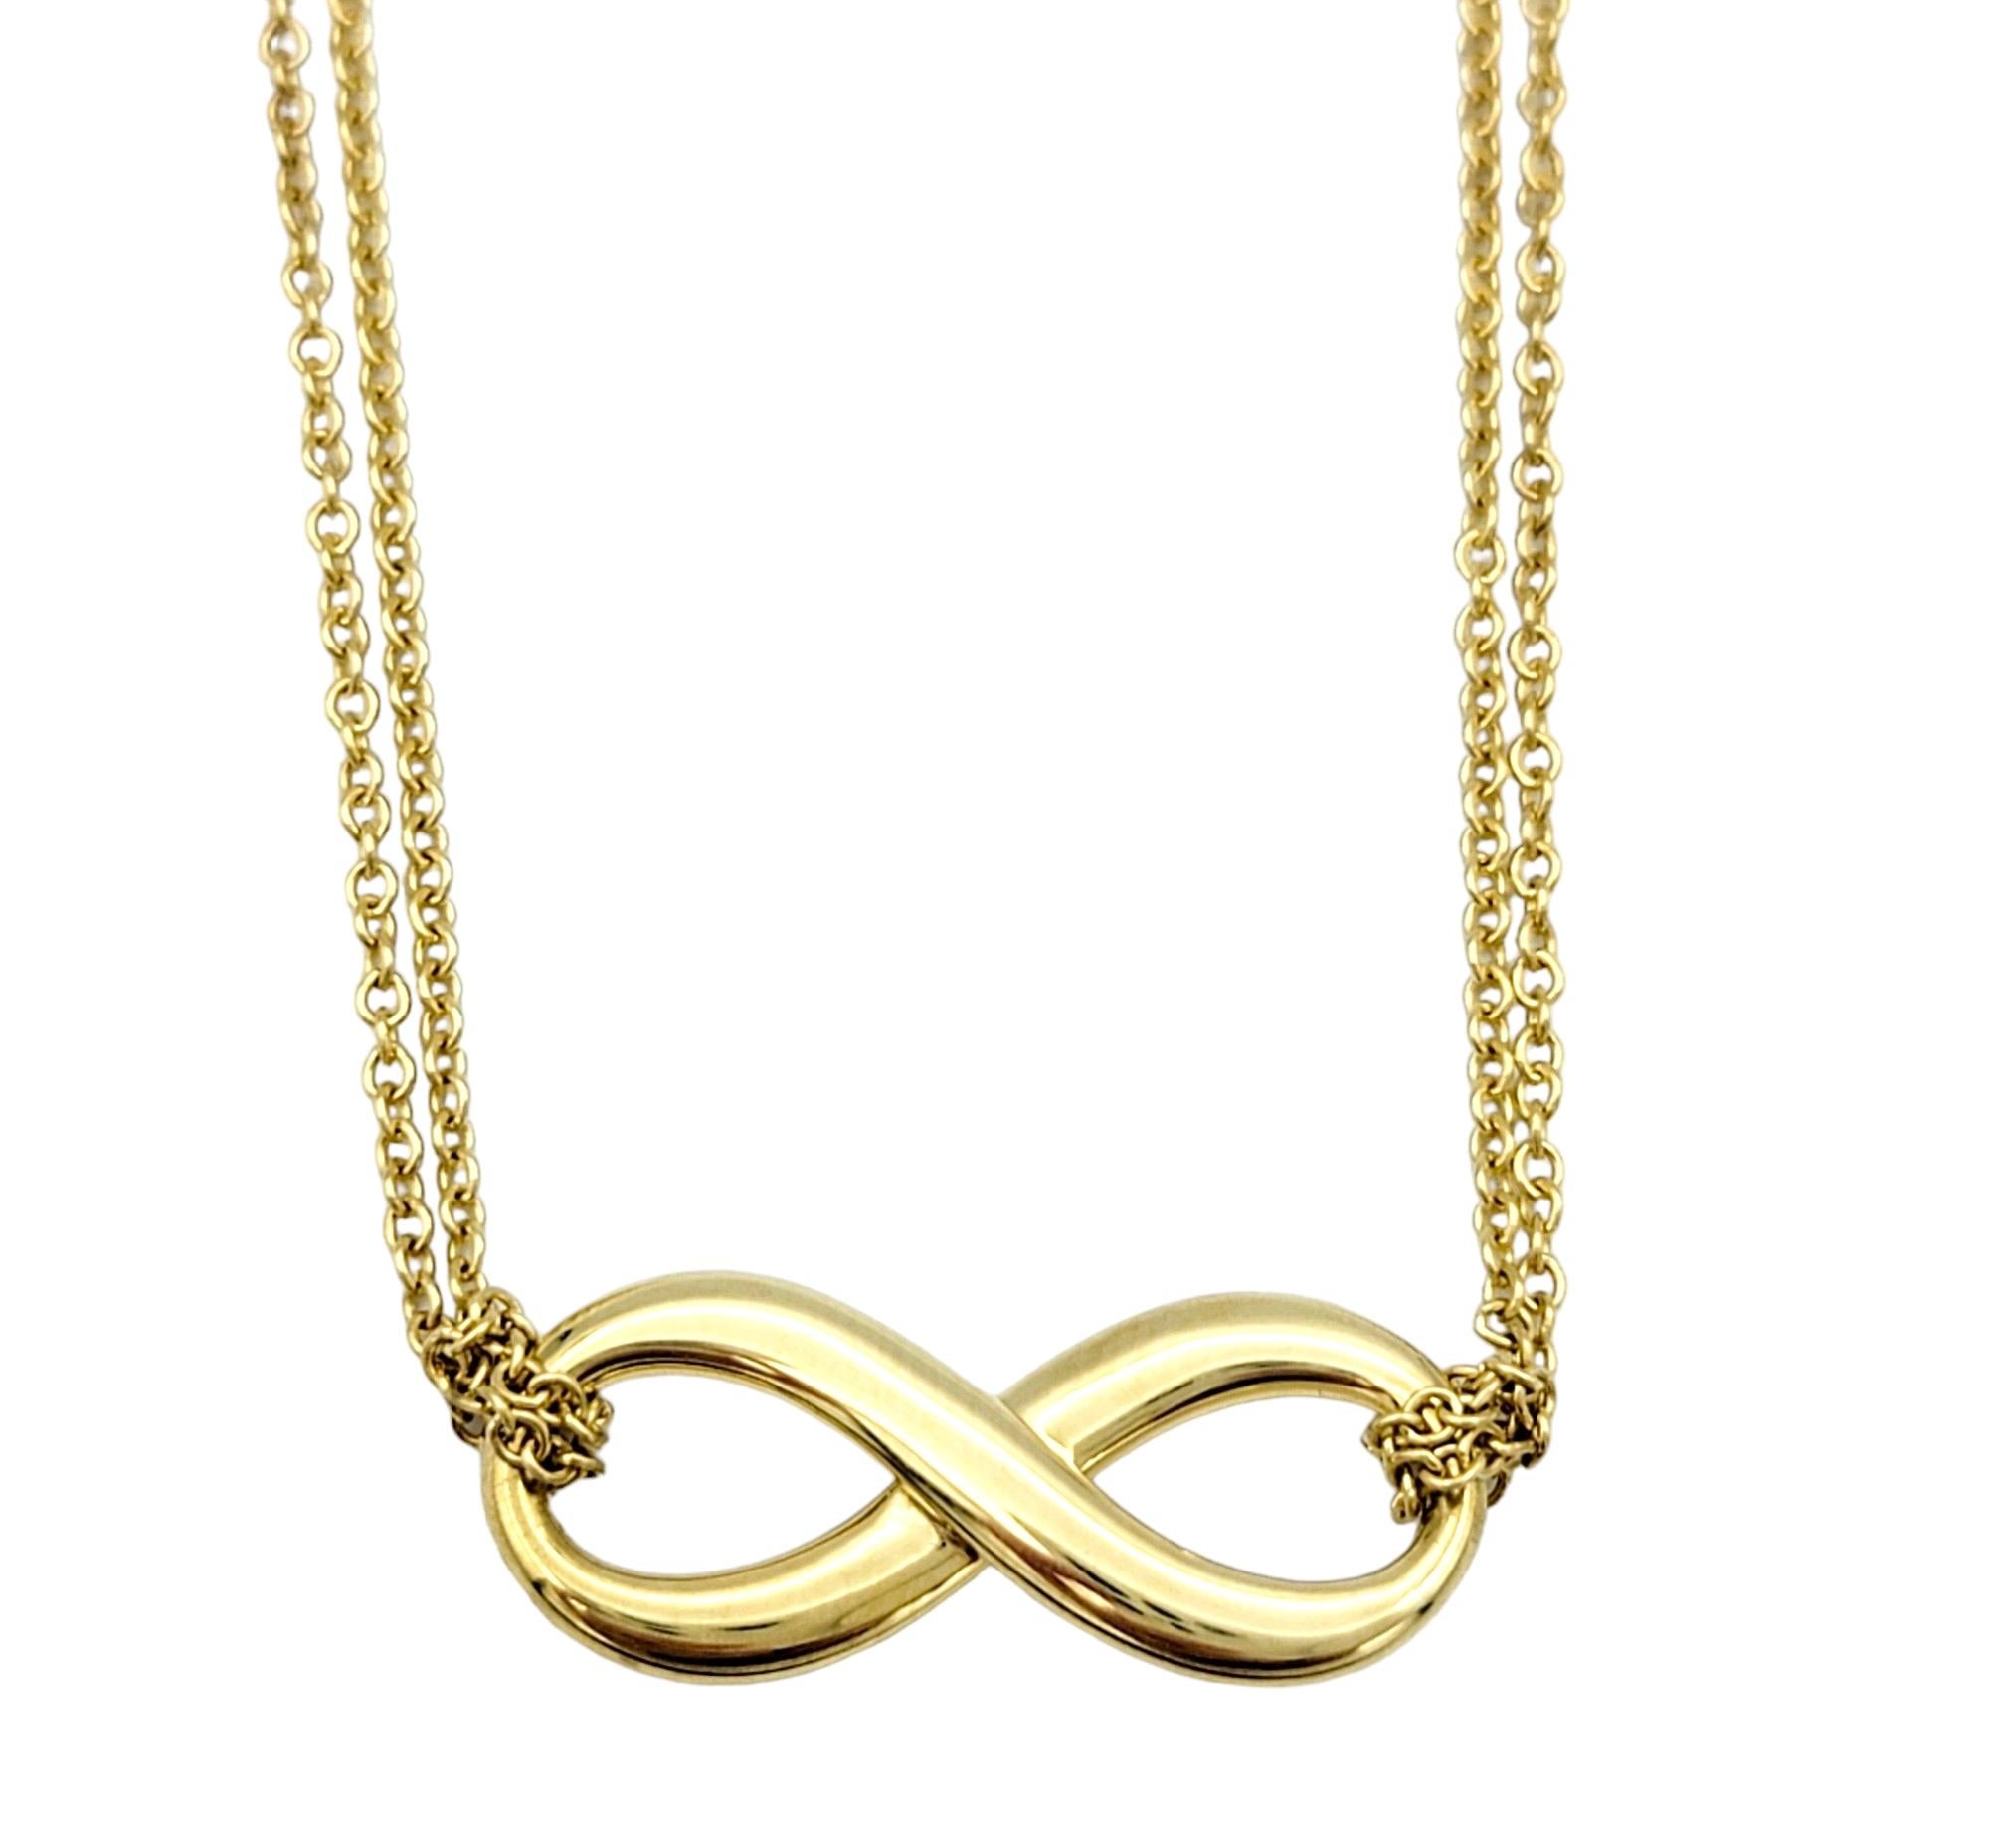 Ce superbe collier pendentif infini à double chaîne en or jaune 18 carats de Tiffany & Co. est un bijou époustouflant qui respire l'élégance et la sophistication. Le pendentif comporte le symbole emblématique de l'infini, représentant l'éternité et